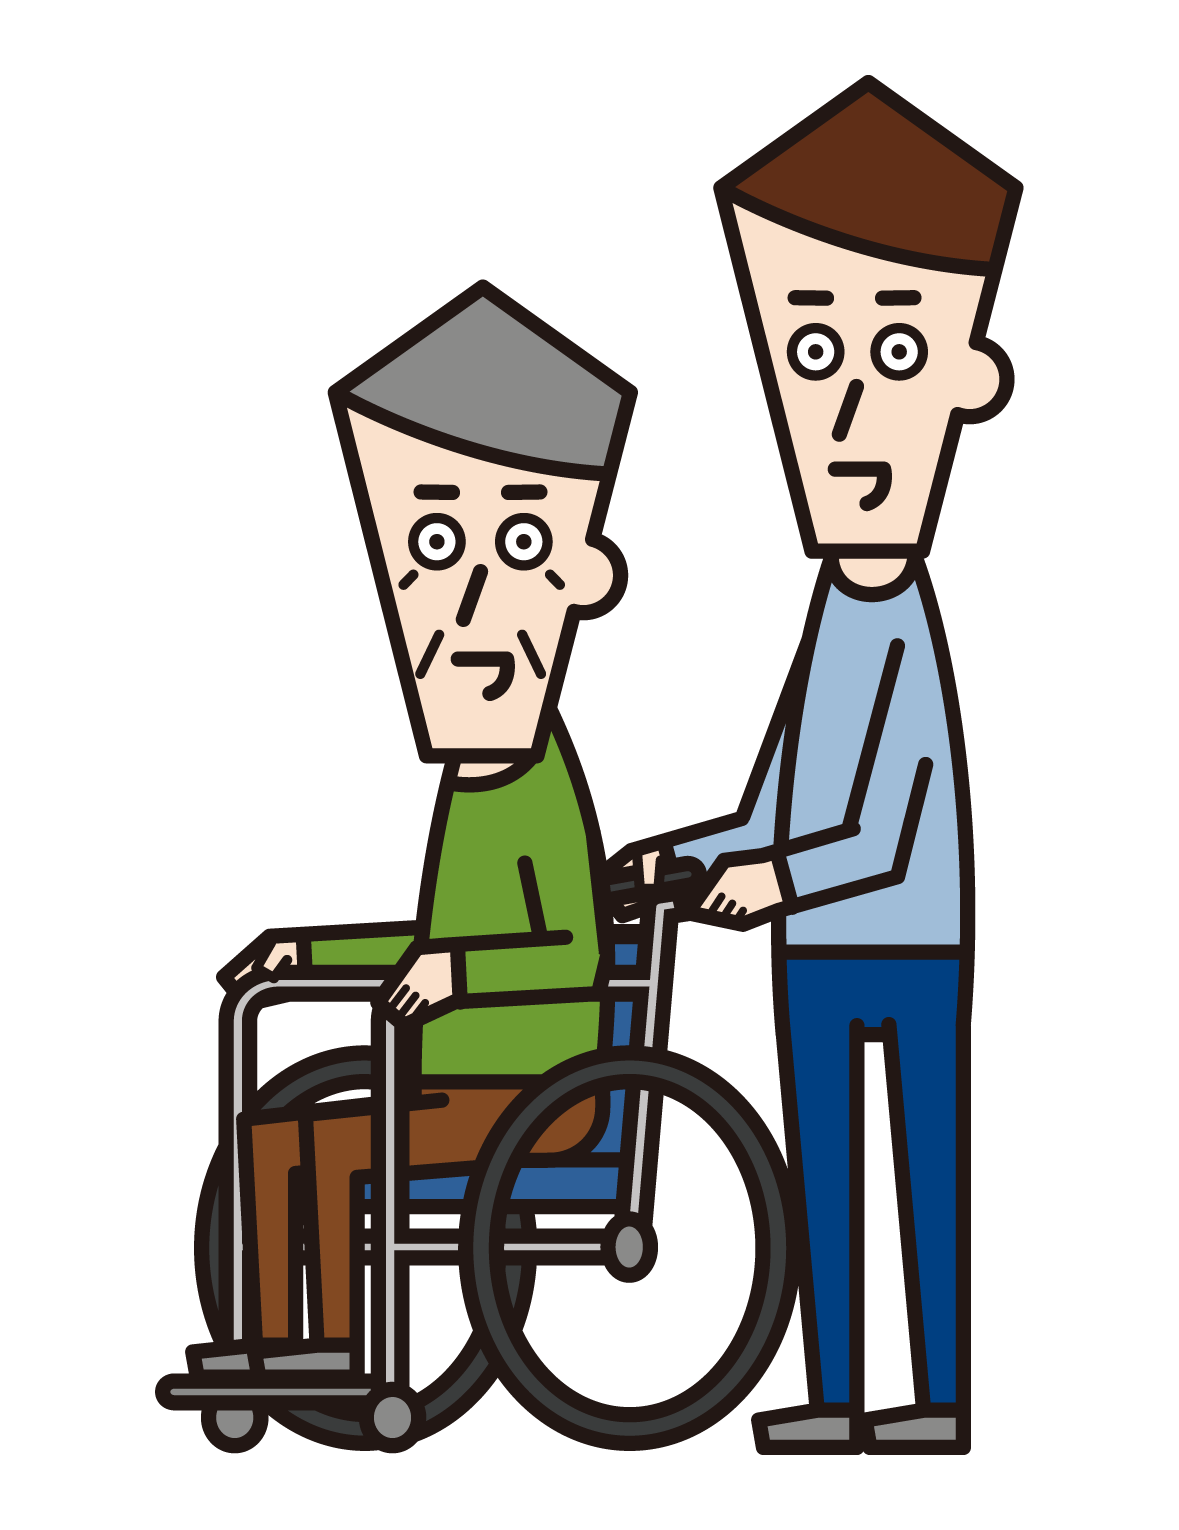 휠체어를 탄 사람(할아버지)과 푸셔(남성)의 그림